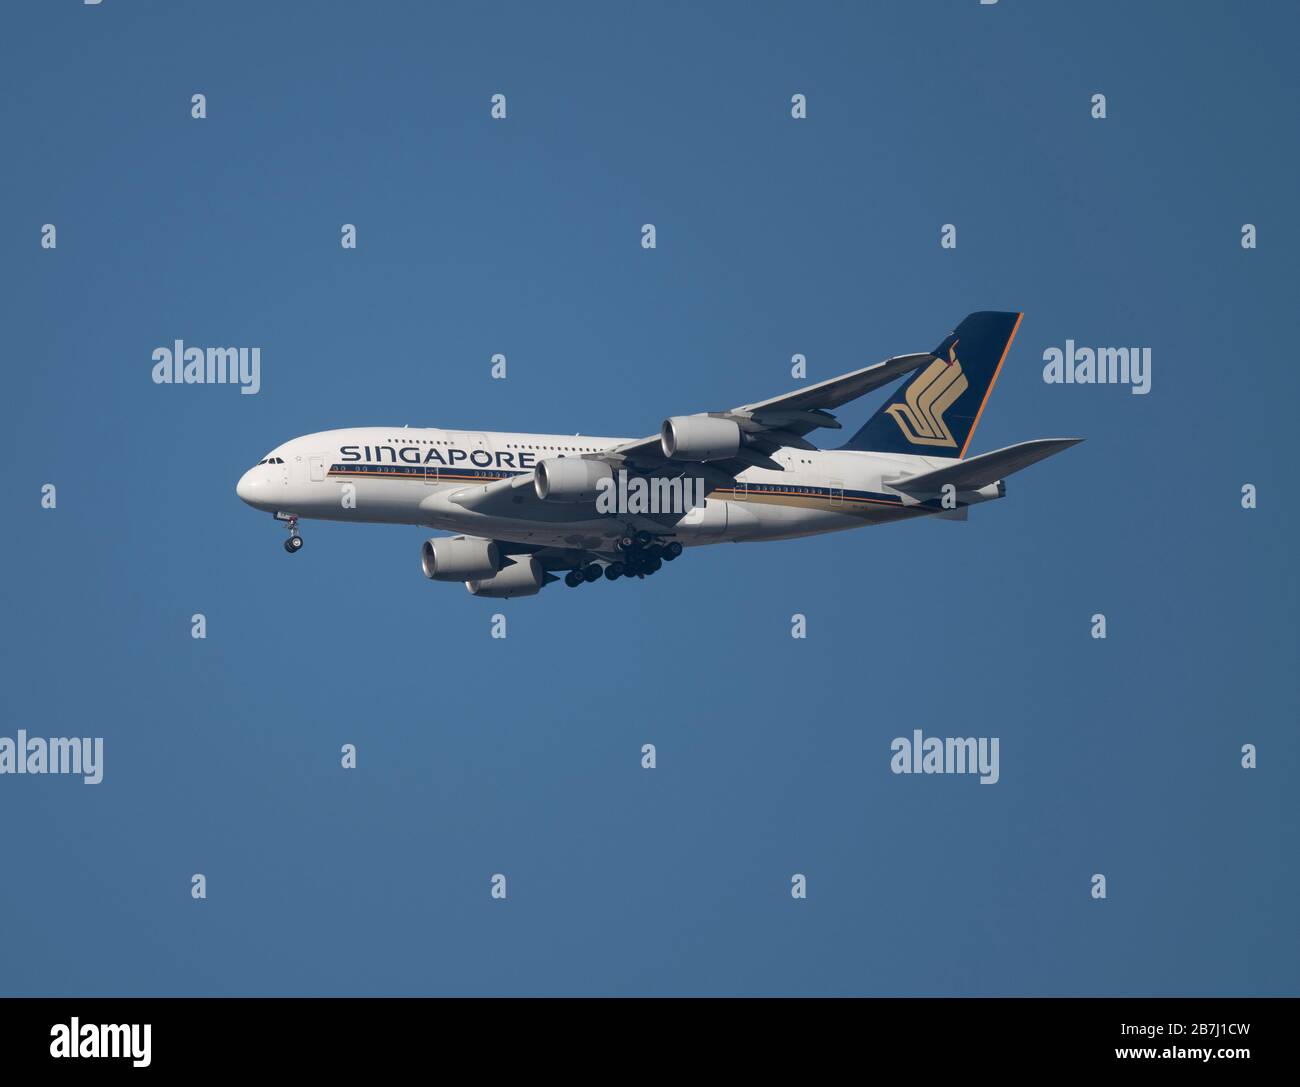 16 marzo 2020, Londra, Regno Unito. Singapore Airlines Airbus A380 - MSN 82 9V-SKR in avvicinamento a Heathrow, arrivando da Singapore. Foto Stock